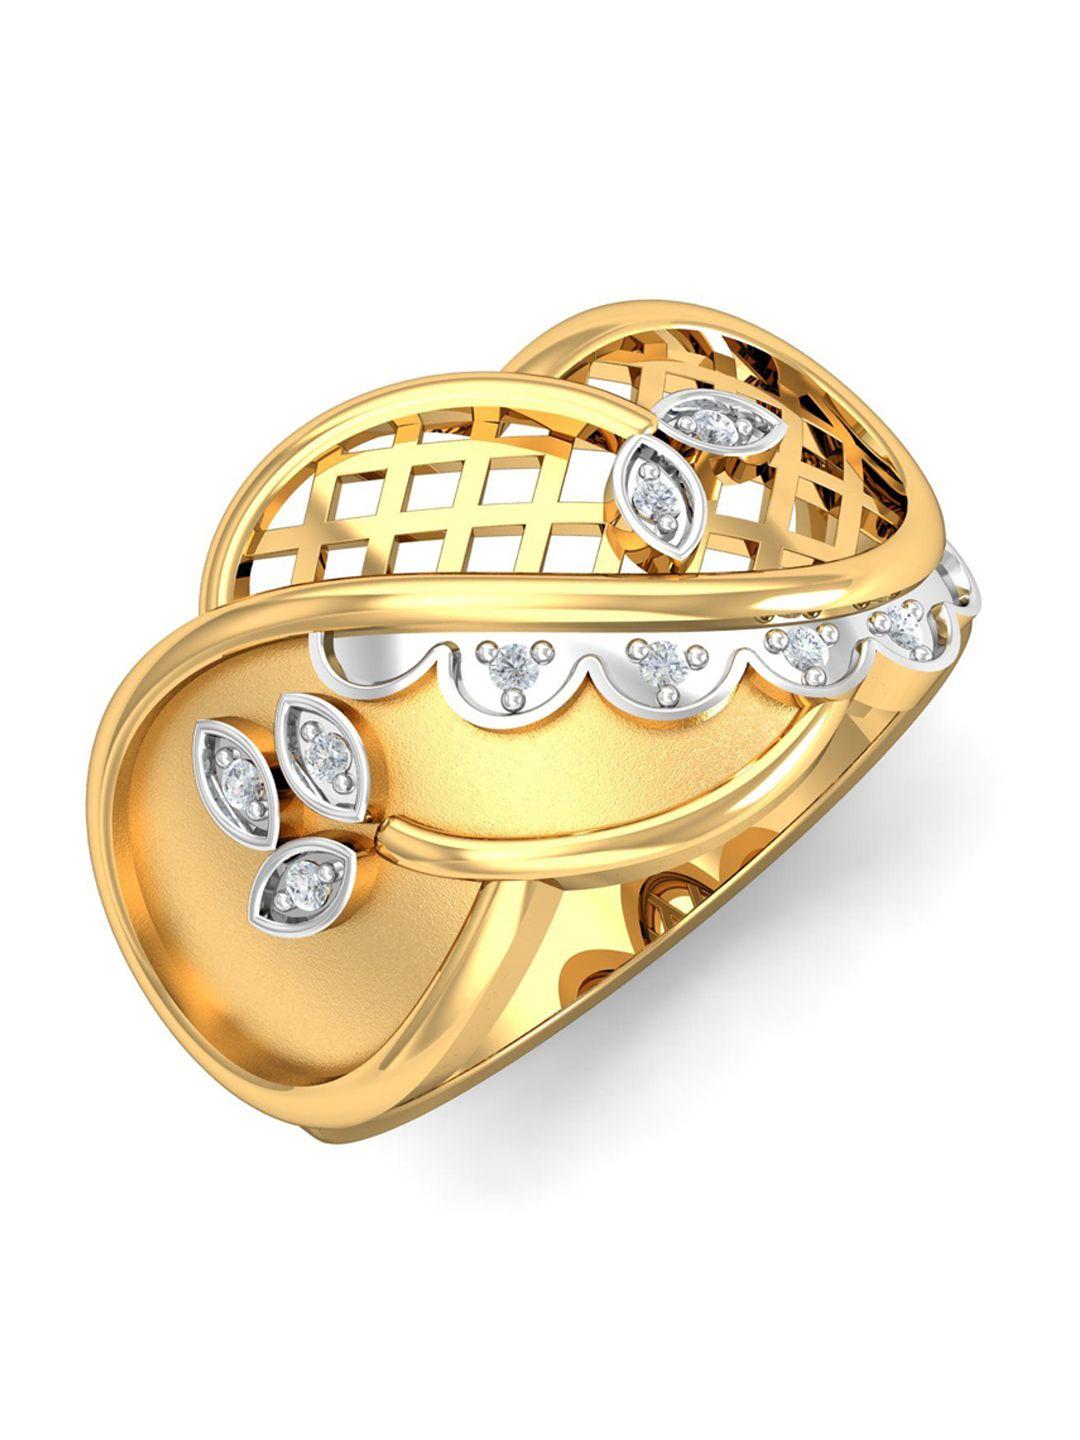 kuberbox elspeth 18kt gold diamond studded finger ring-5.72gm